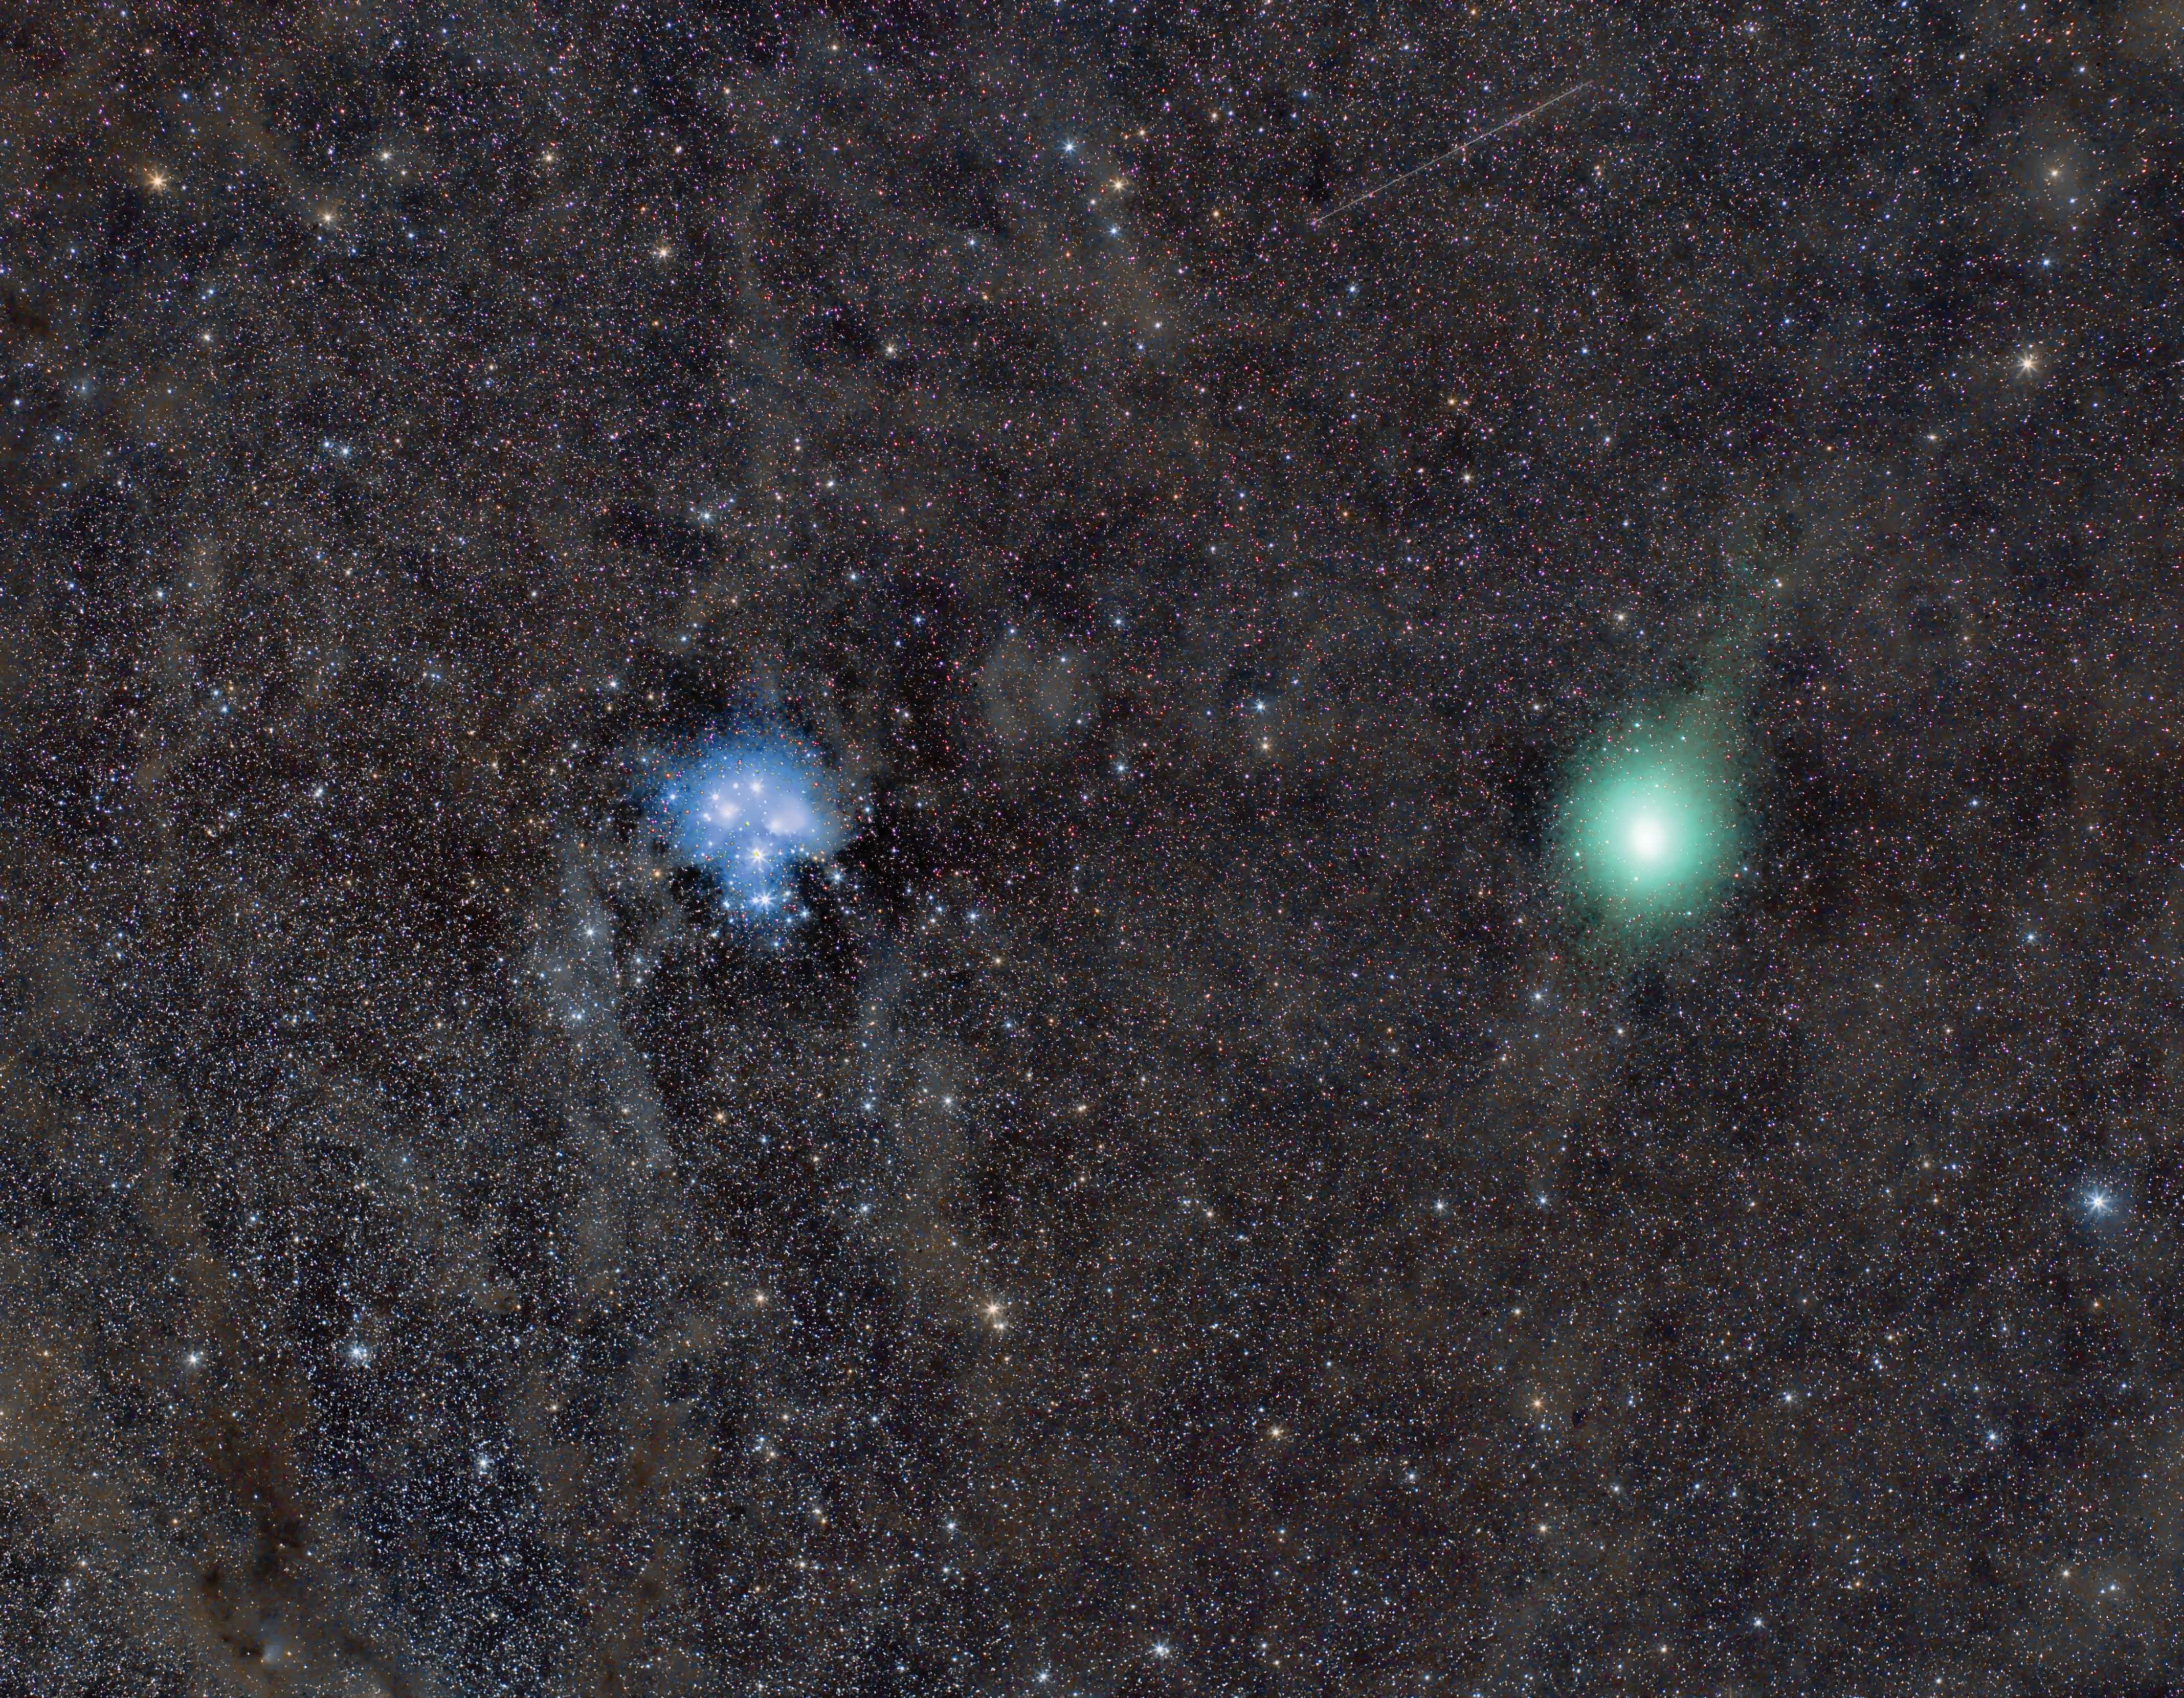 16 декабря, комета 46p / виртанена приблизится к земле. покайтесь грешники, пока непоздно